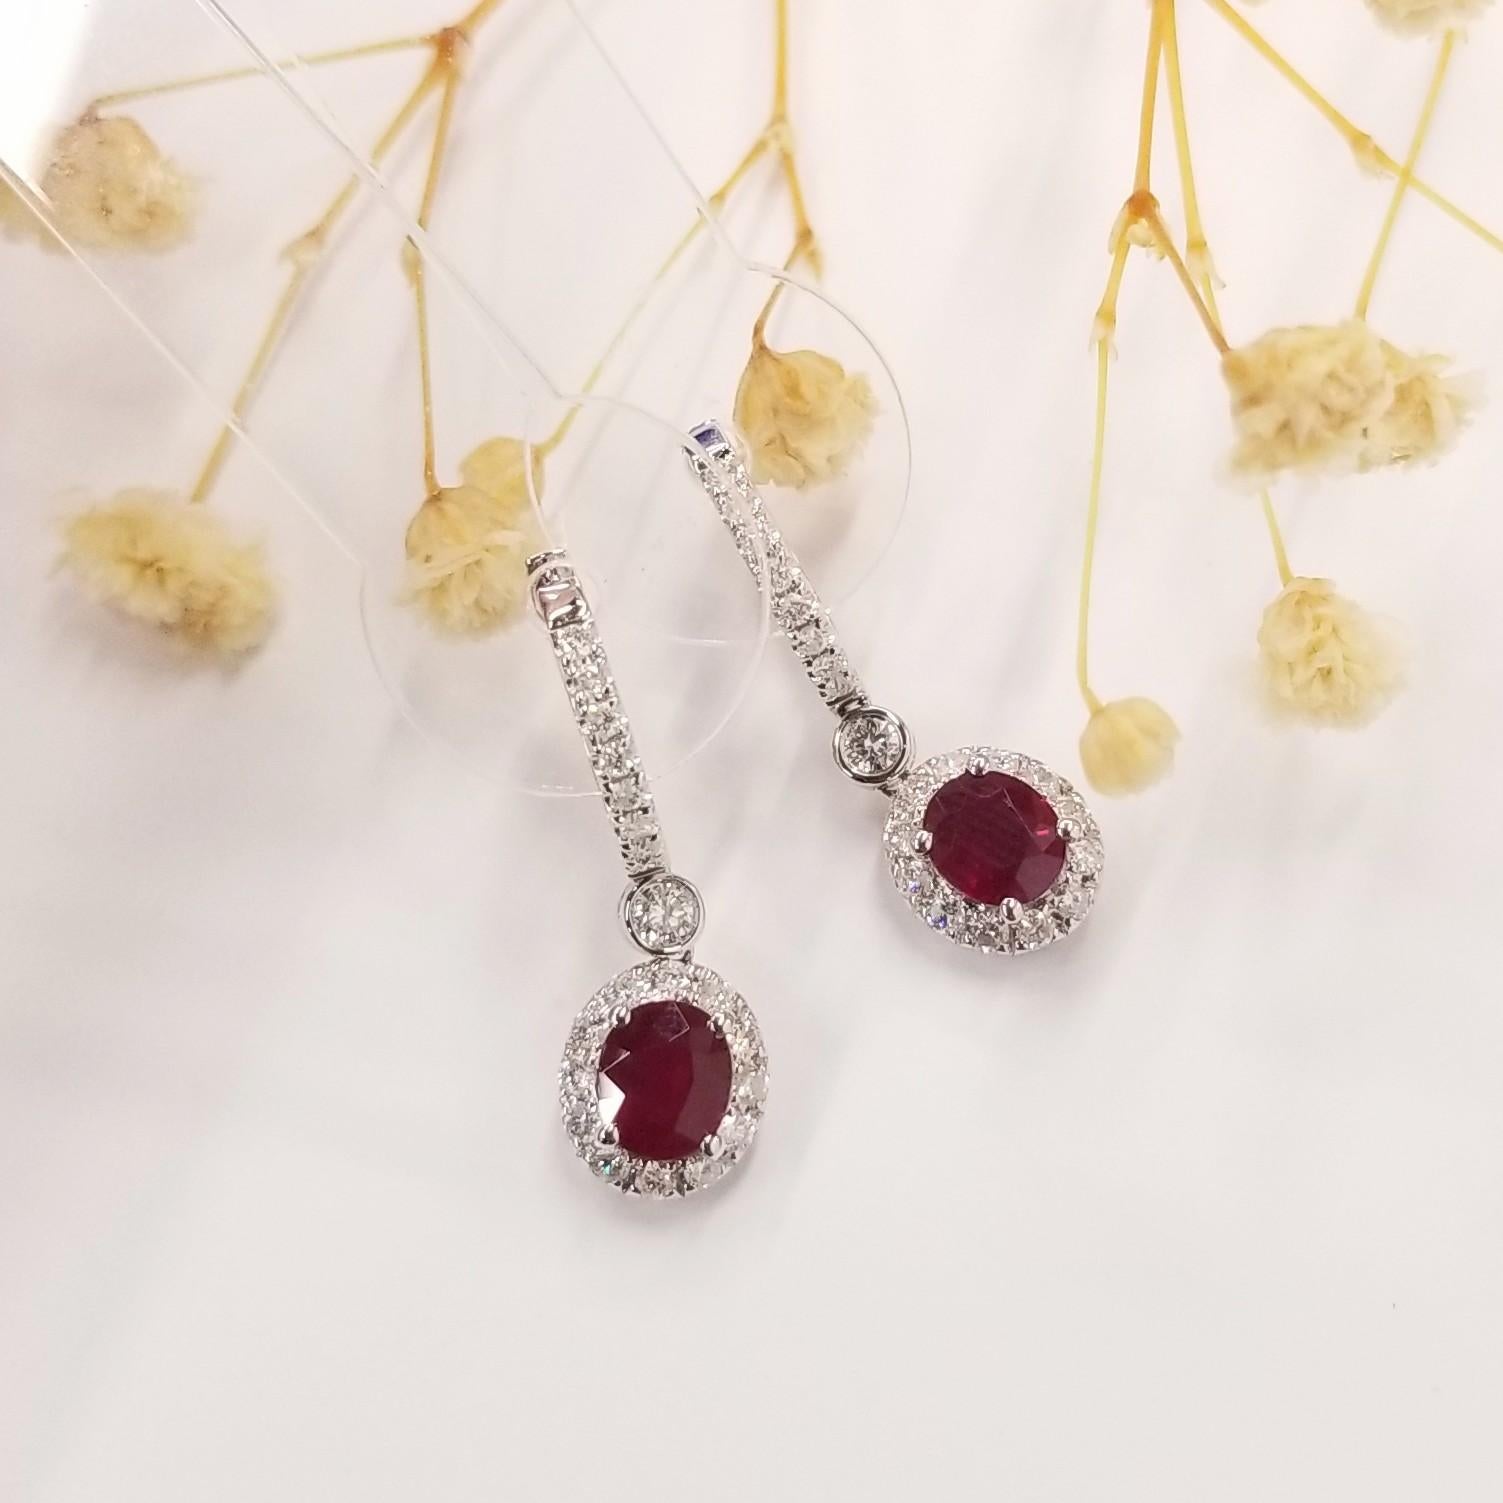 Wir präsentieren ein fesselndes Paar IGI-zertifizierter 1.58-Karat-Rubin-Ohrringe, eine wahrhaft hypnotisierende Komposition, die die Schönheit natürlicher Rubine und Diamanten zur Geltung bringt. Diese Ohrringe aus 18 Karat Weißgold sind mit einem